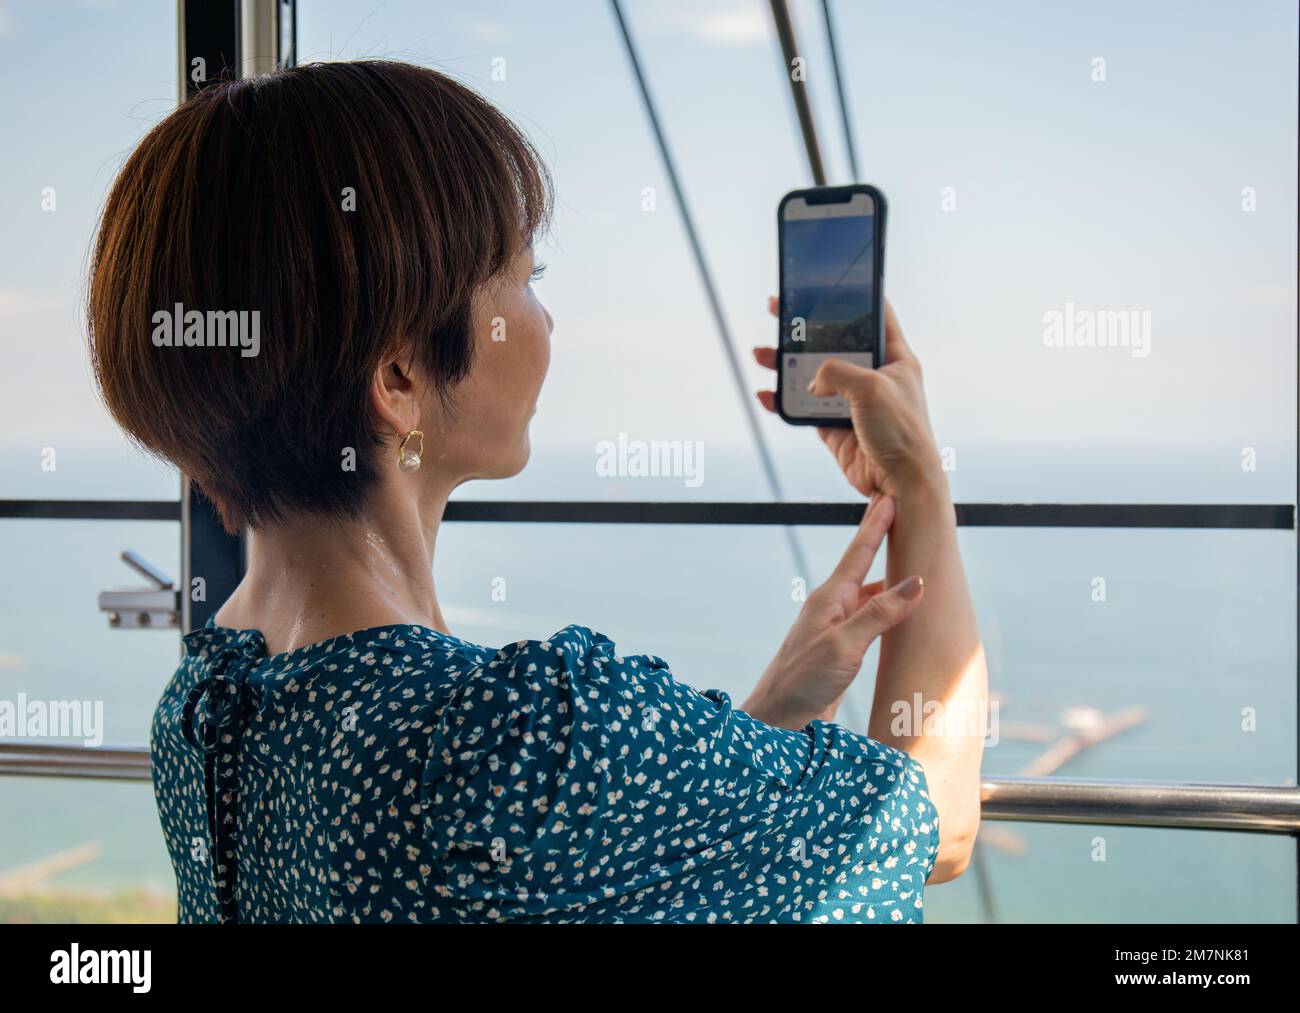 Eine reife japanische Frau, die mit ihrem Mobiltelefon Fotos von einer Seilbahn-Kabine der Stadt und der Landschaft darunter machte. Stockfoto